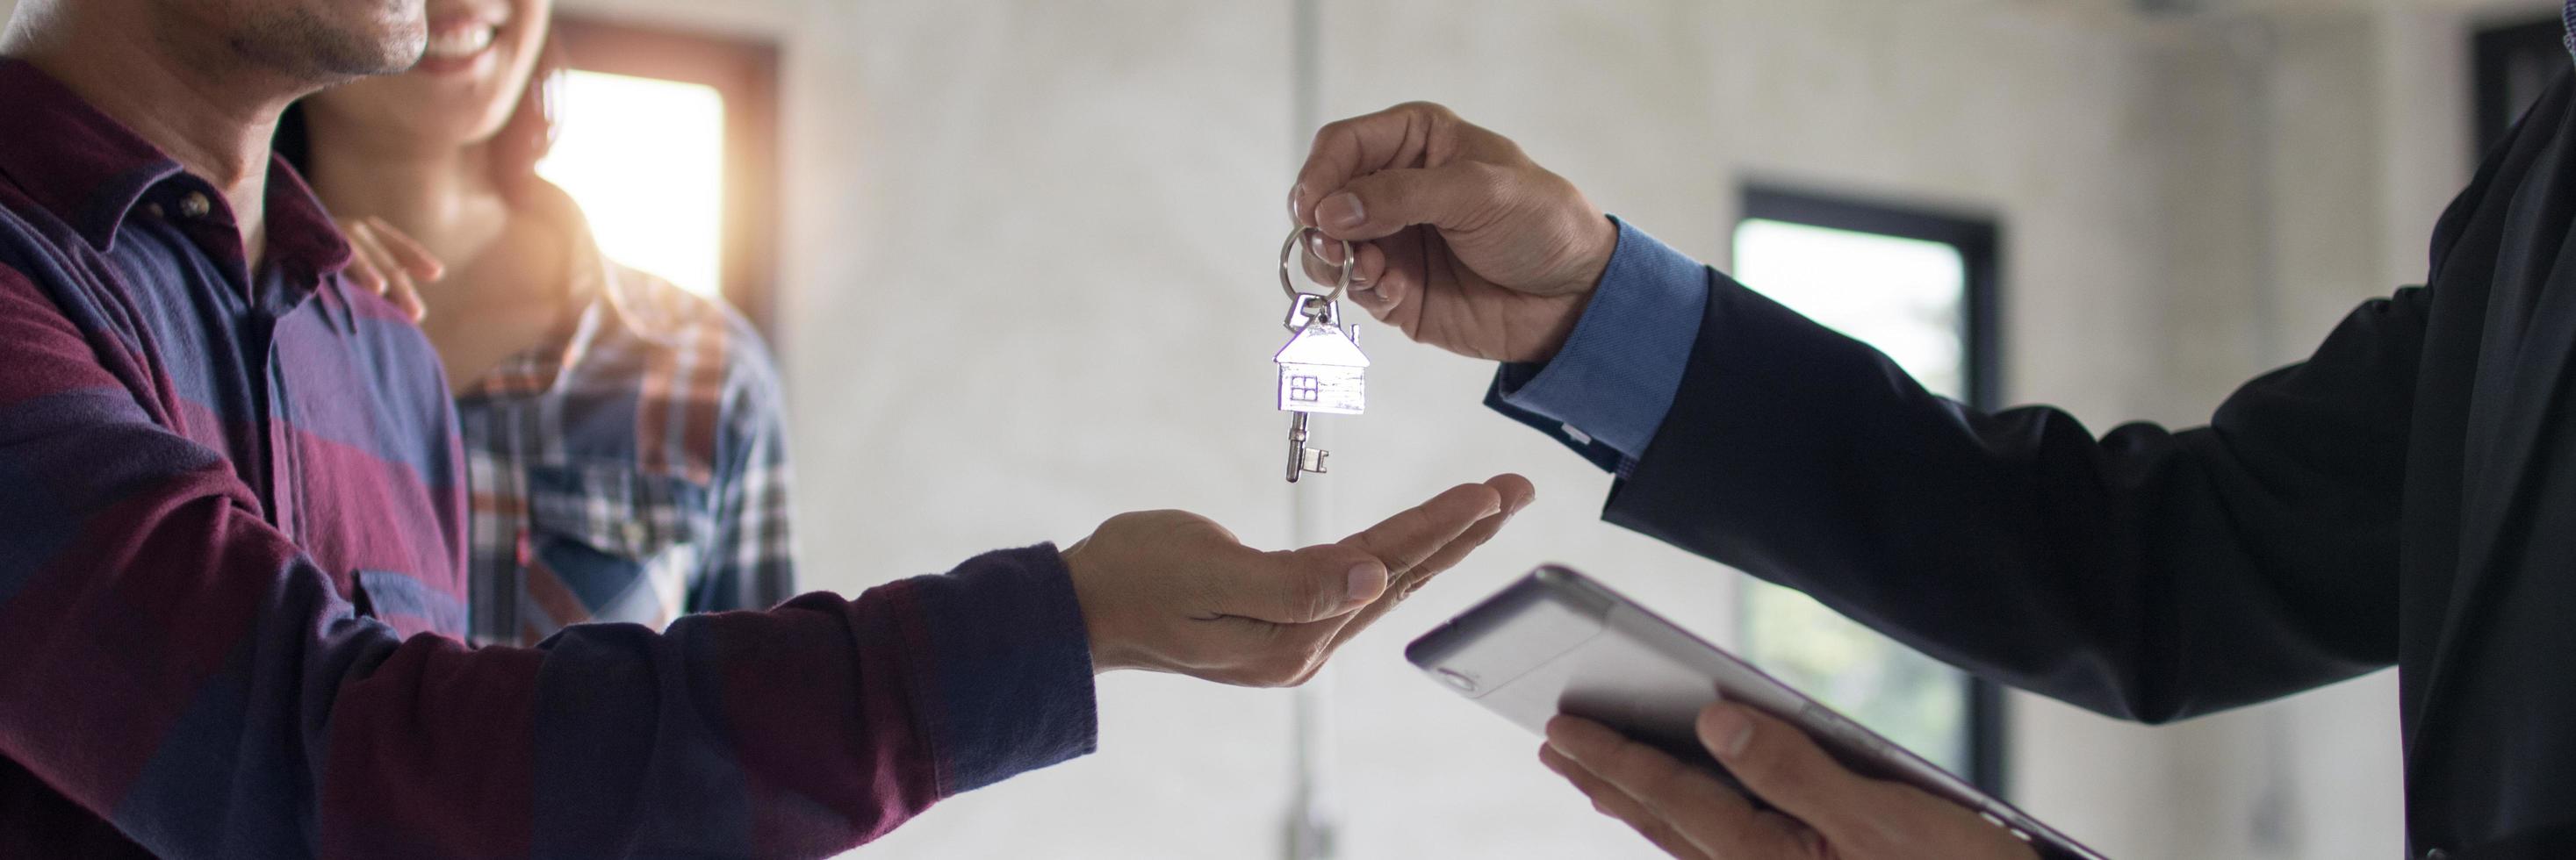 agente bancário dá a chave do apartamento ou residente ao jovem casal após uma discussão bem-sucedida e contrato finalizado, conceito imobiliário foto